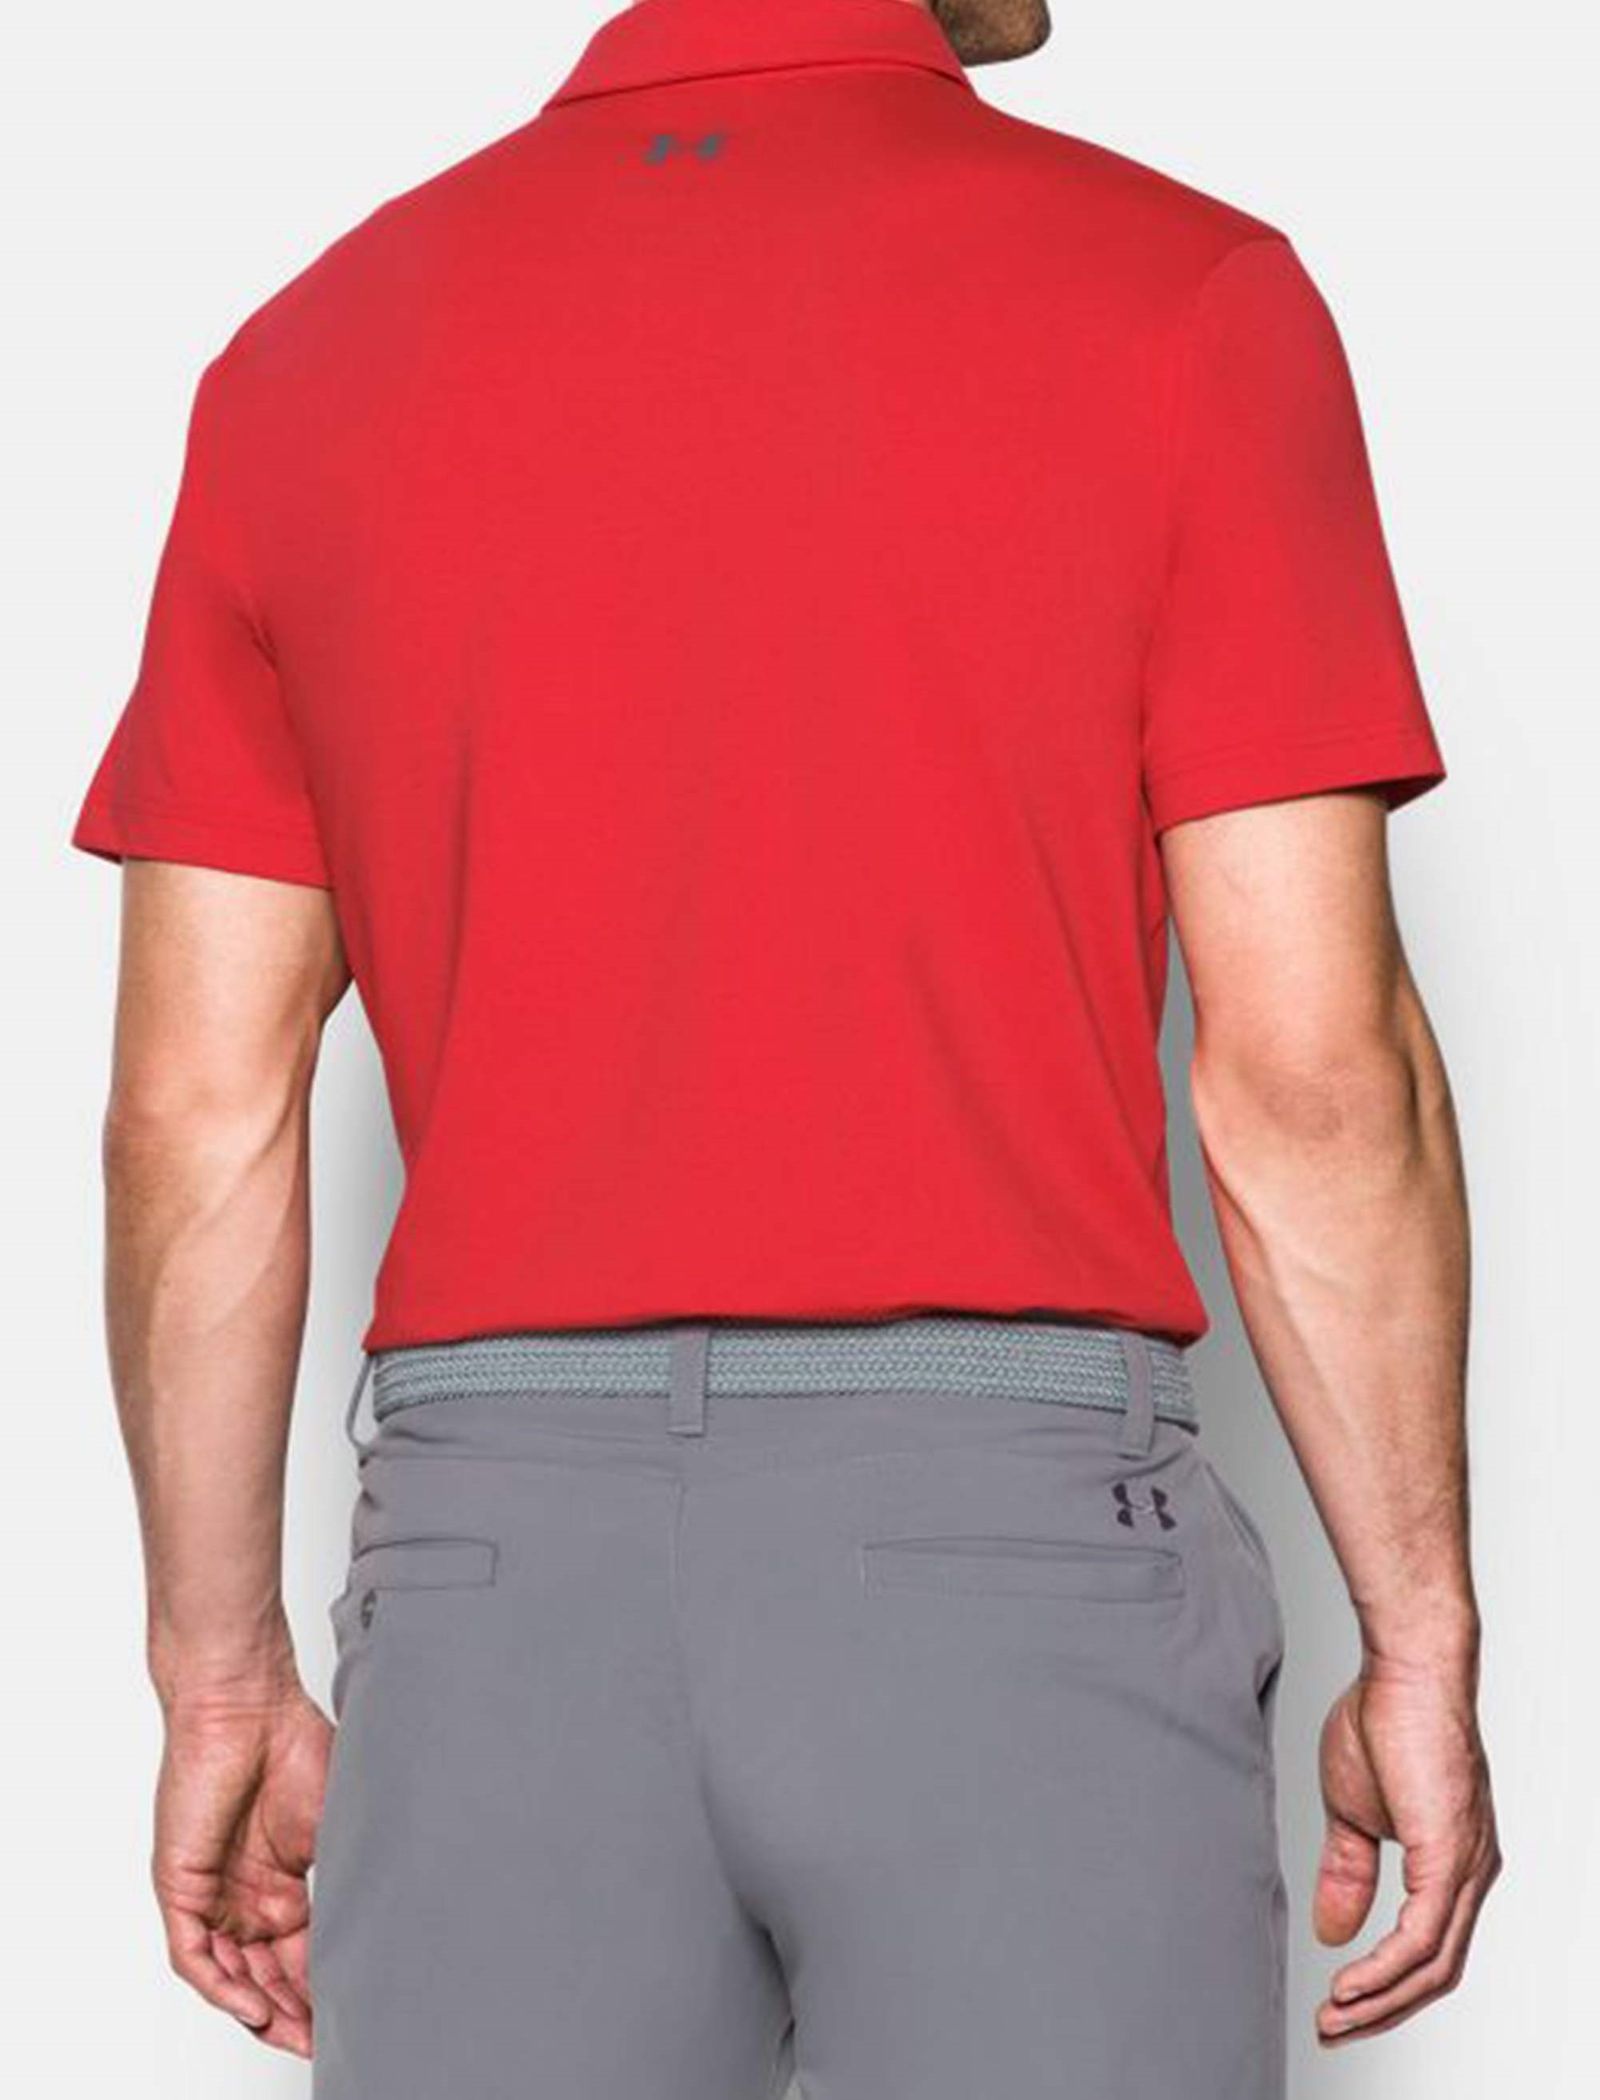 پولوشرت ورزشی آستین کوتاه مردانه - آندر آرمور - قرمز - 5